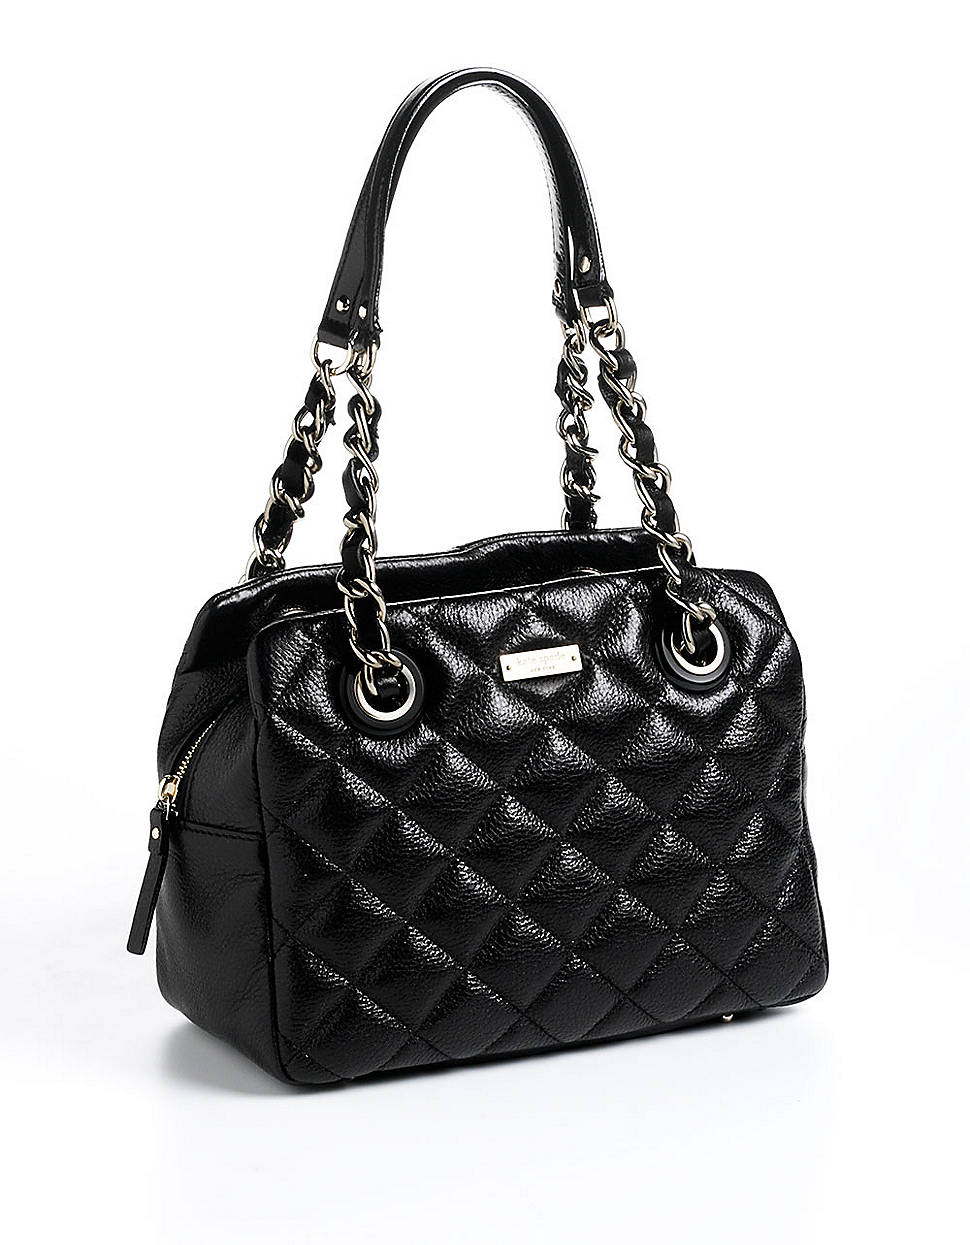 Lyst - Kate Spade New York Elizabeth Leather Quilted Shoulder Bag in Black